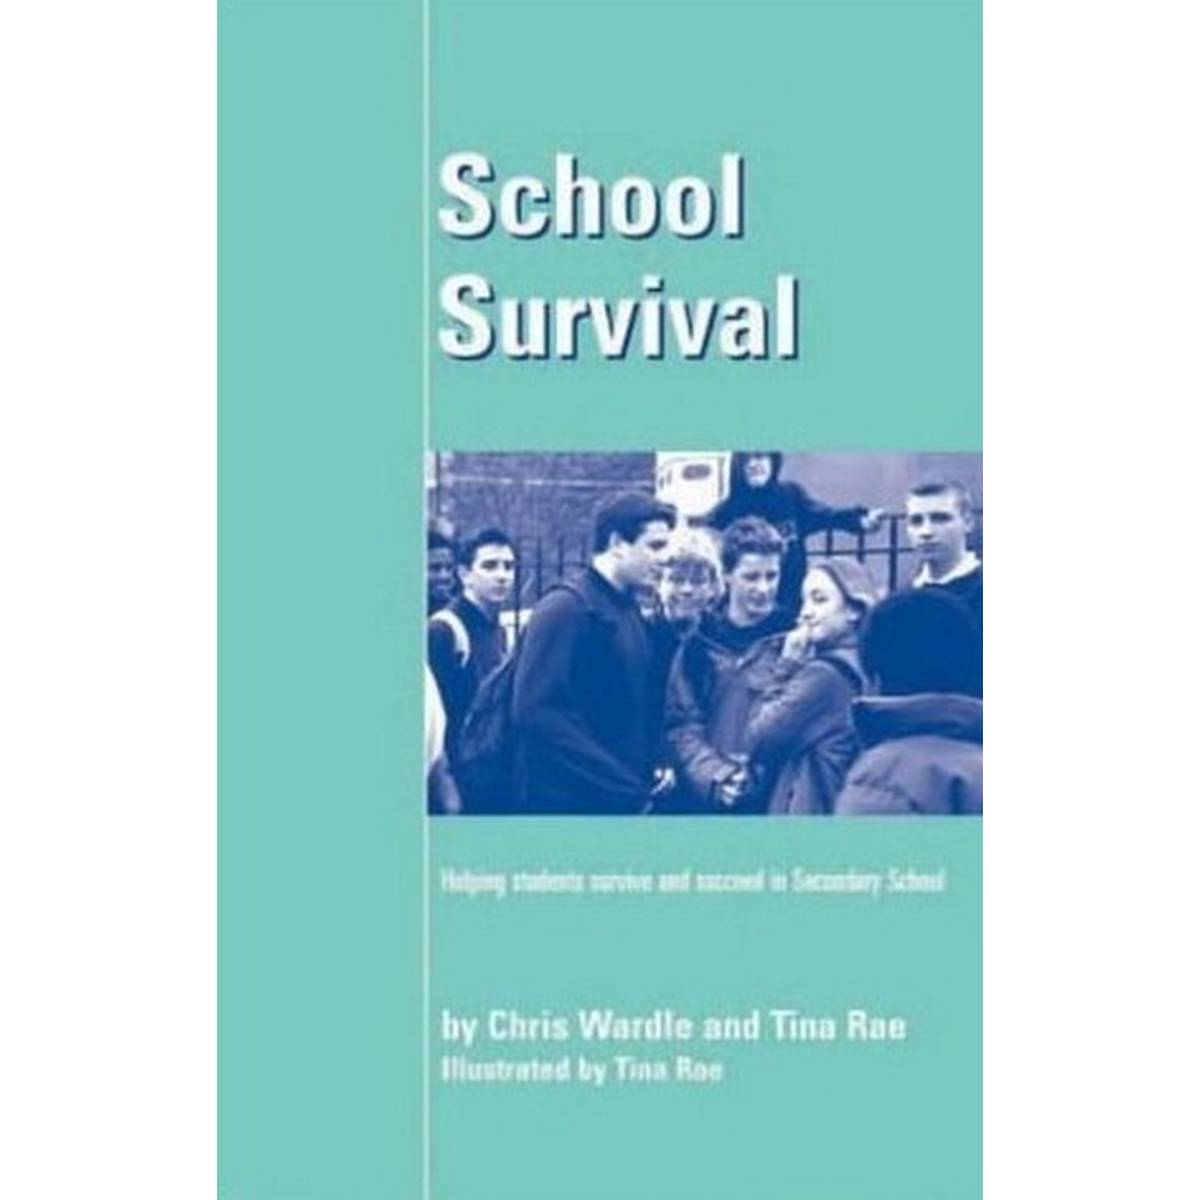 School Survival